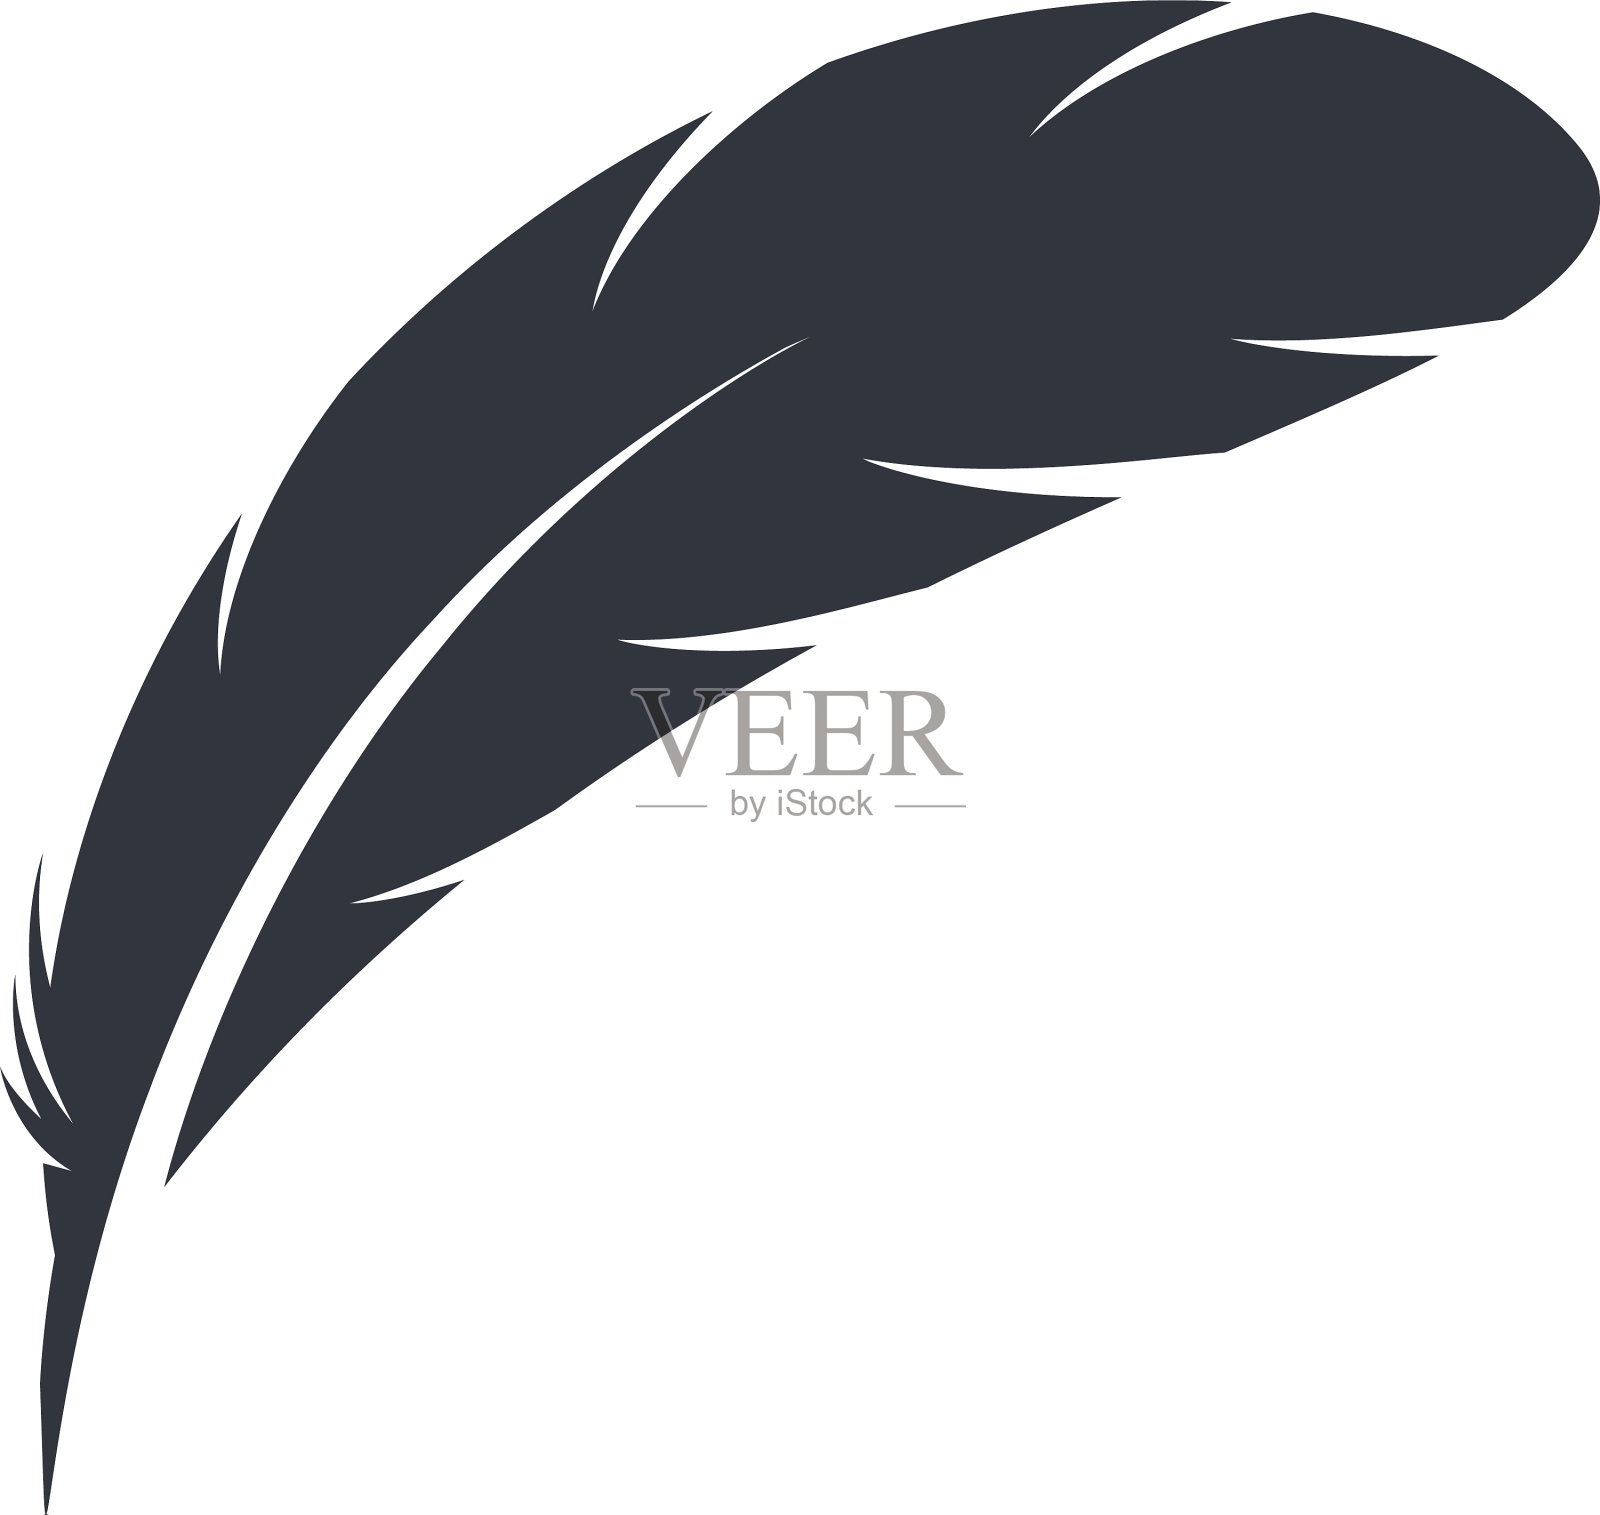 羽毛象征符号设计元素图片